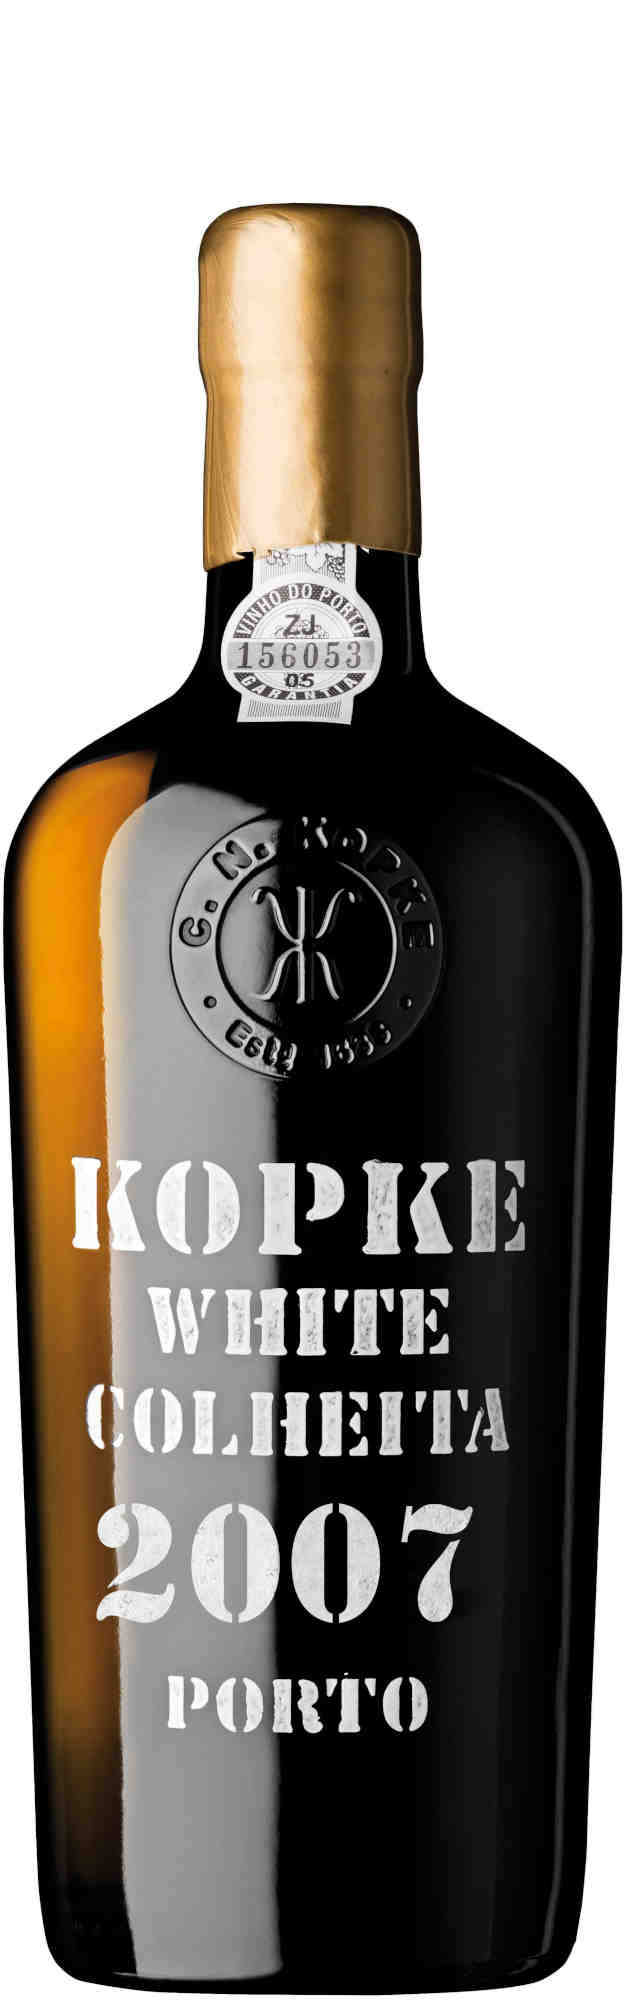 Kopke-White-Colheita-Port-2007